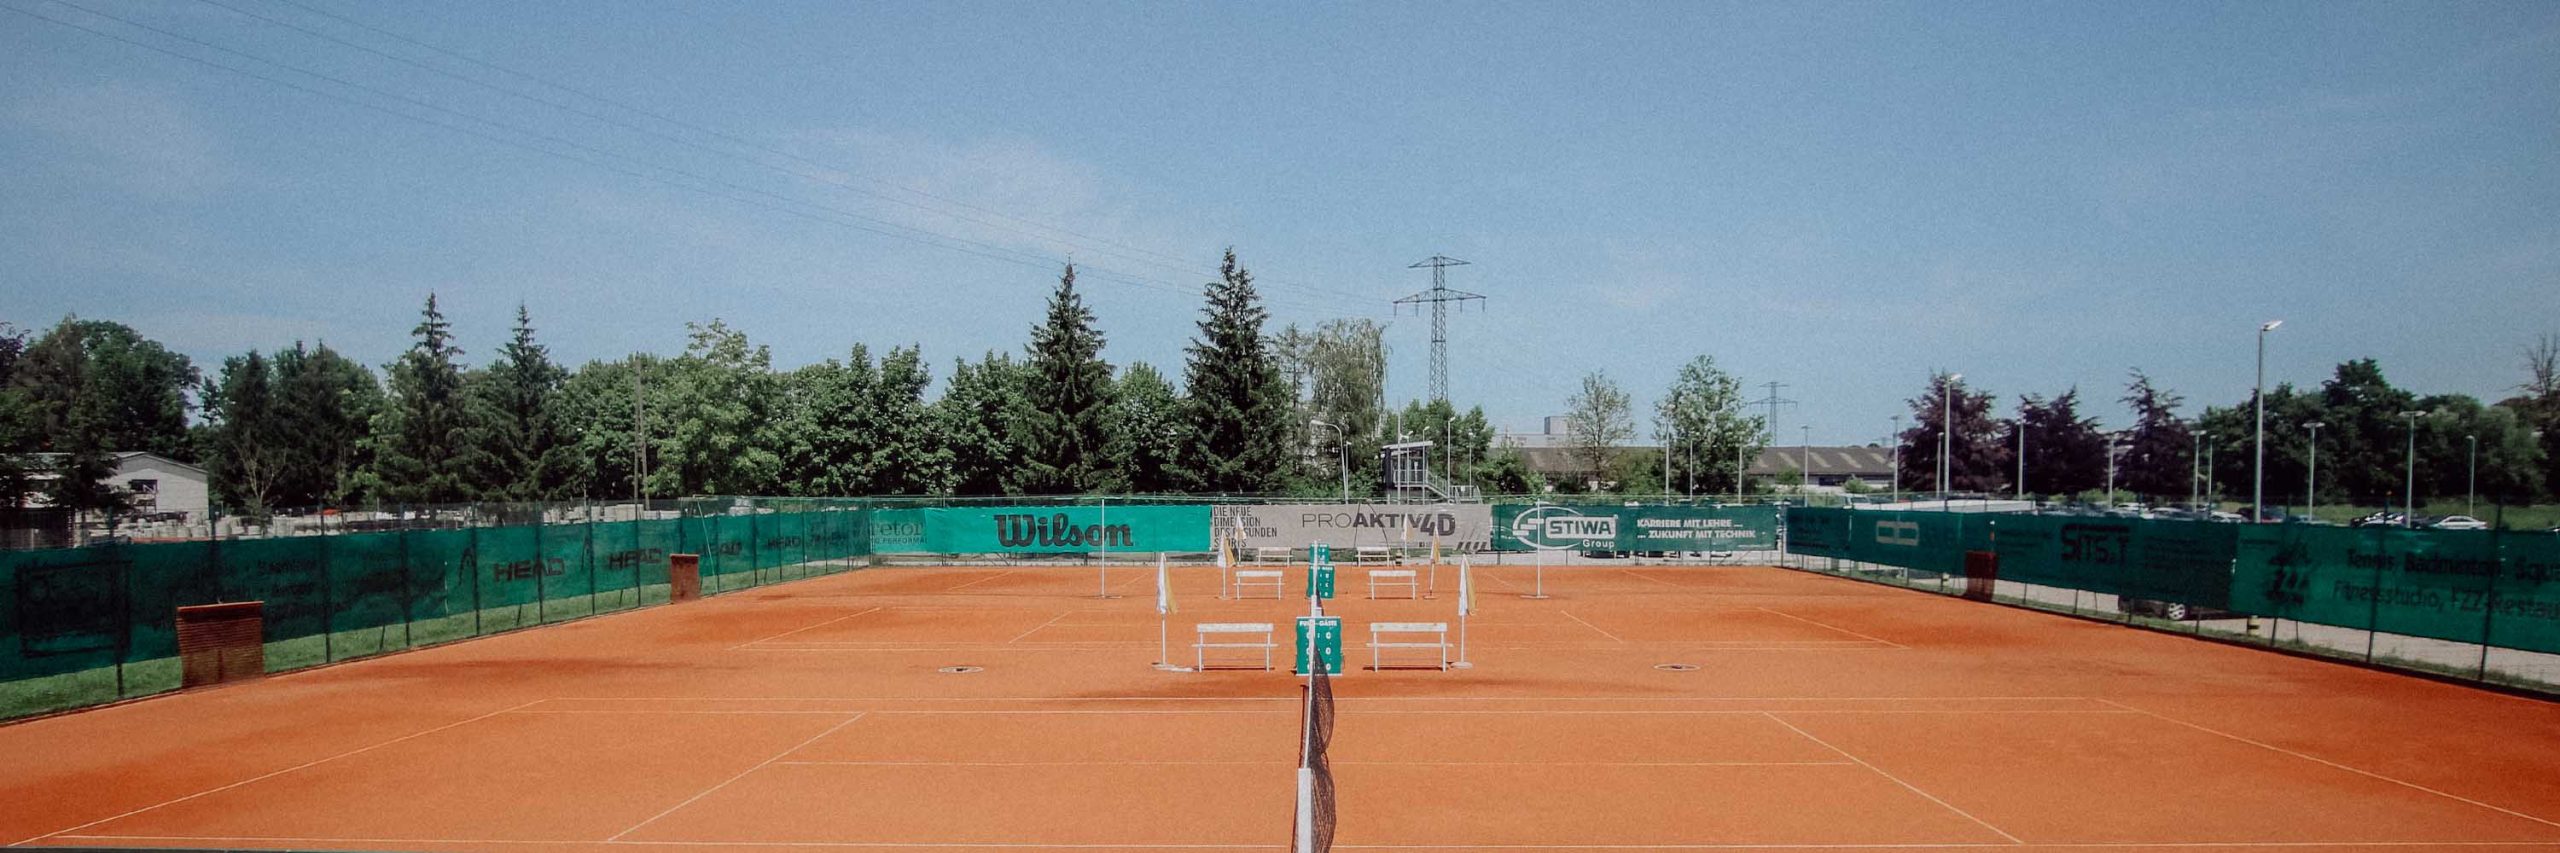 Tennisplatz_1